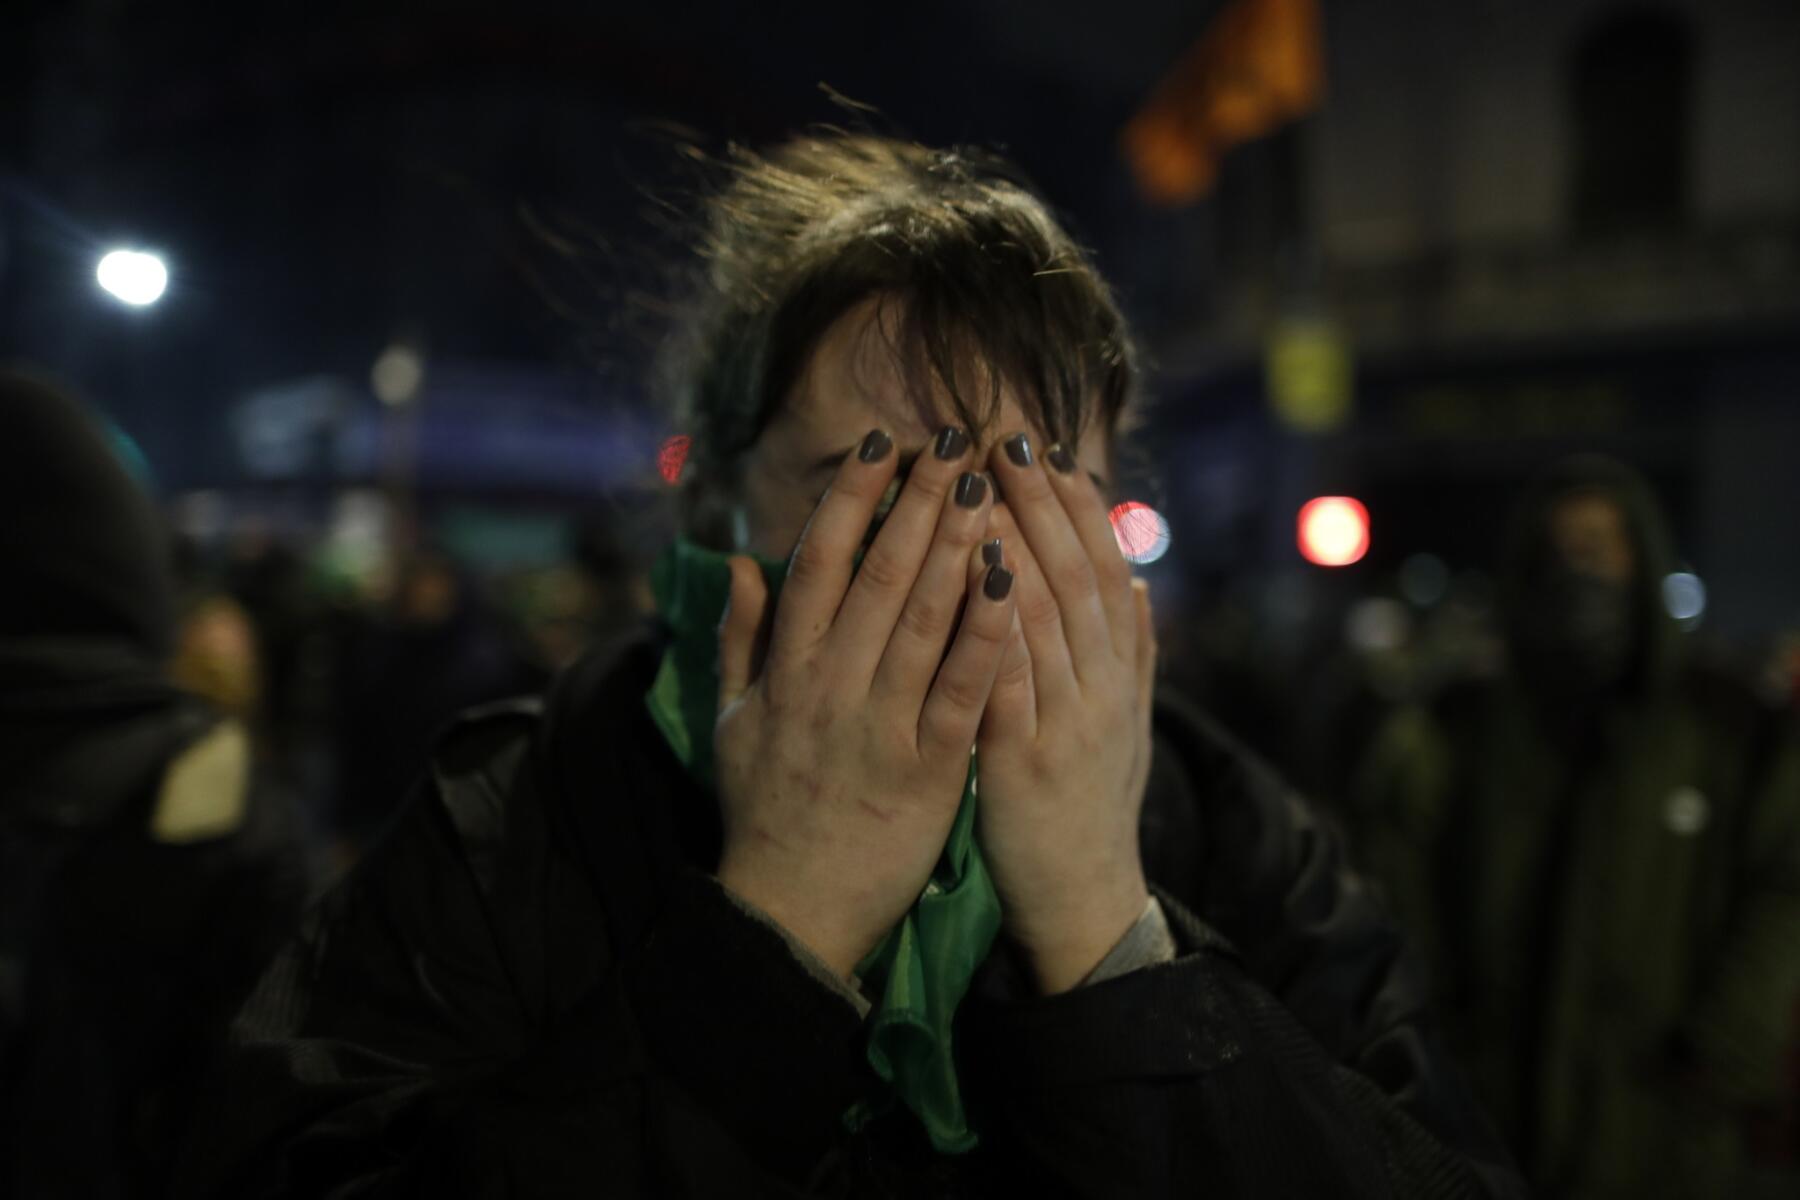 Una activista proaborto se tapa la cara con las manos luego de que el Senado rechazó una propuesta para legalizar el aborto antes de las 14 semanas, en el exterior del Congreso, en Buenos Aires, Argentina, el 9 de agosto de 2018. (AP Foto/Natacha Pisarenko)